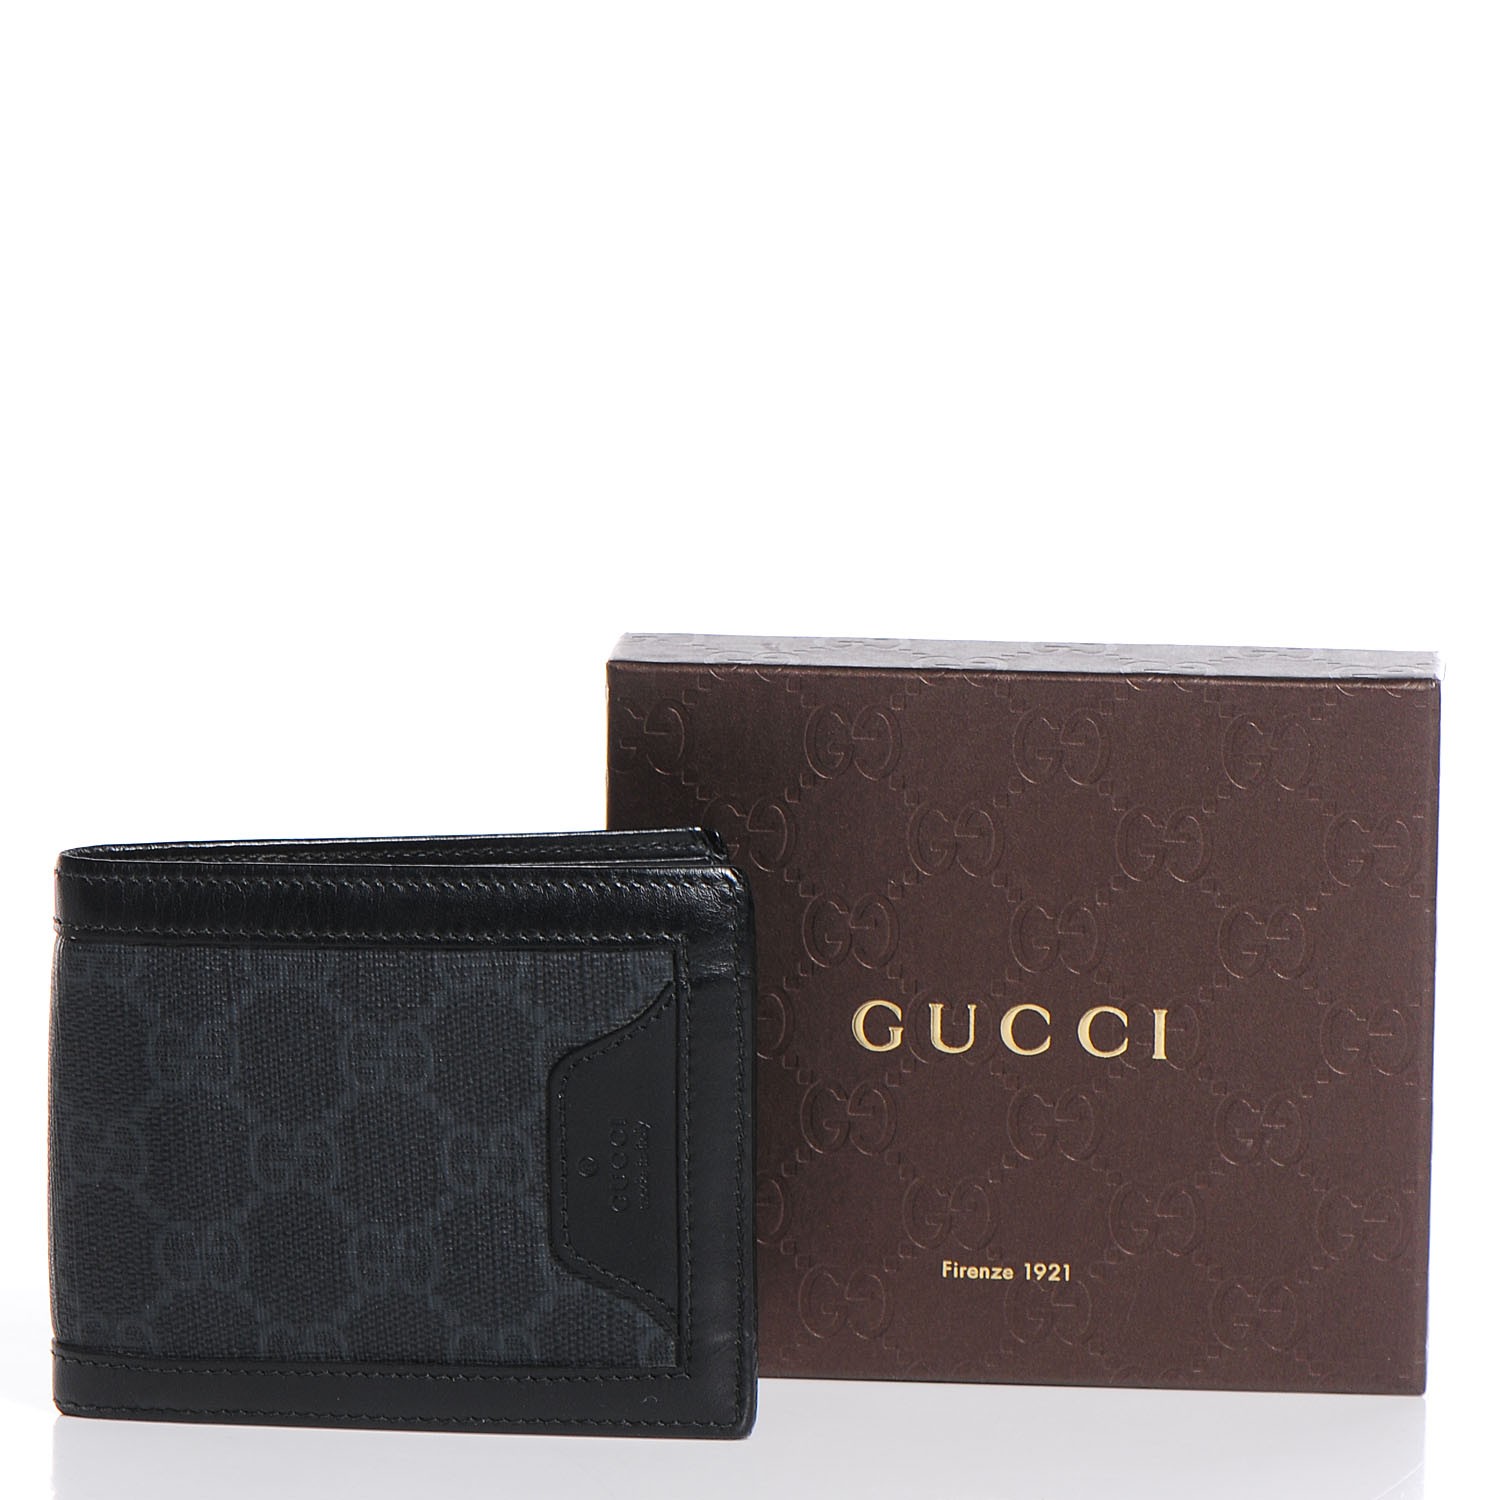 GUCCI GG Supreme Monogram Bi-Fold Wallet Black 105395